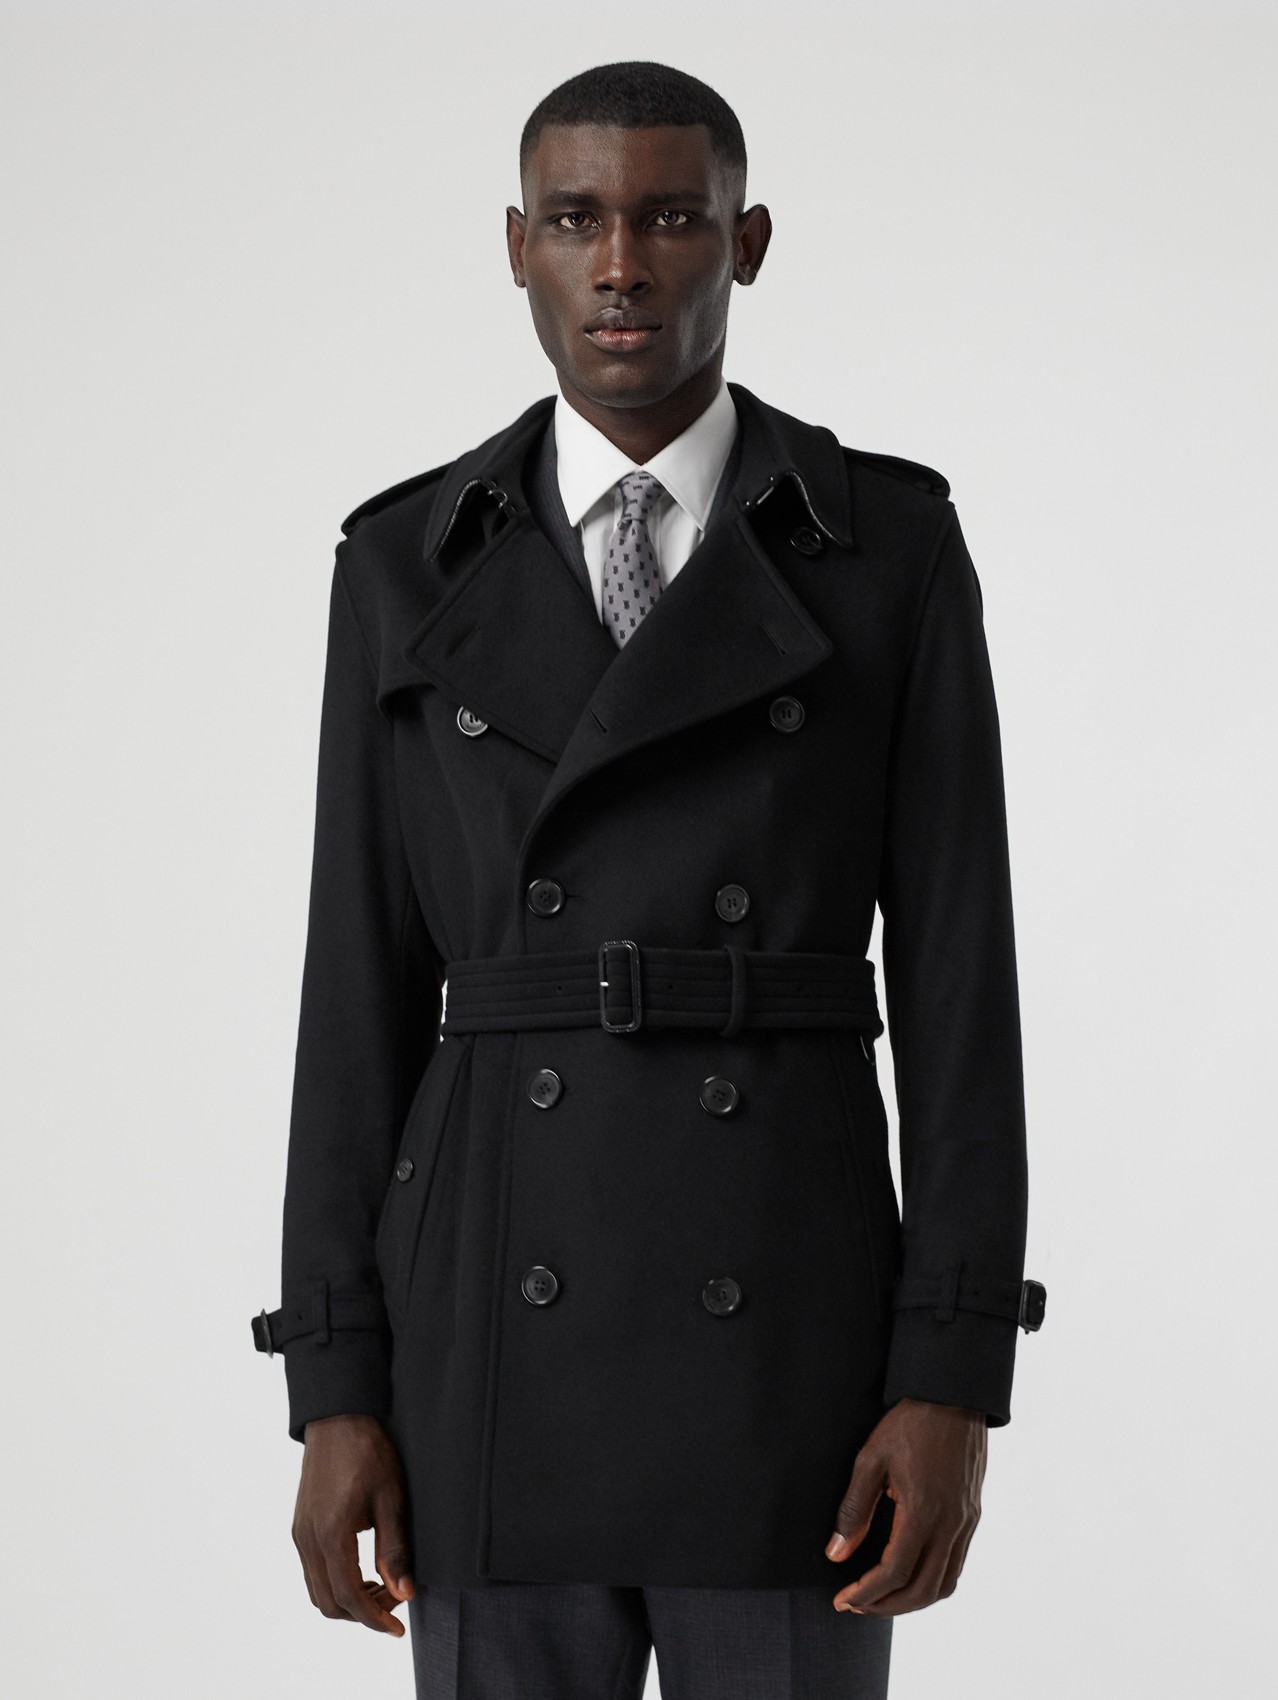 Men's Coats | Pea, Duffle & Top Coats | Burberry United States